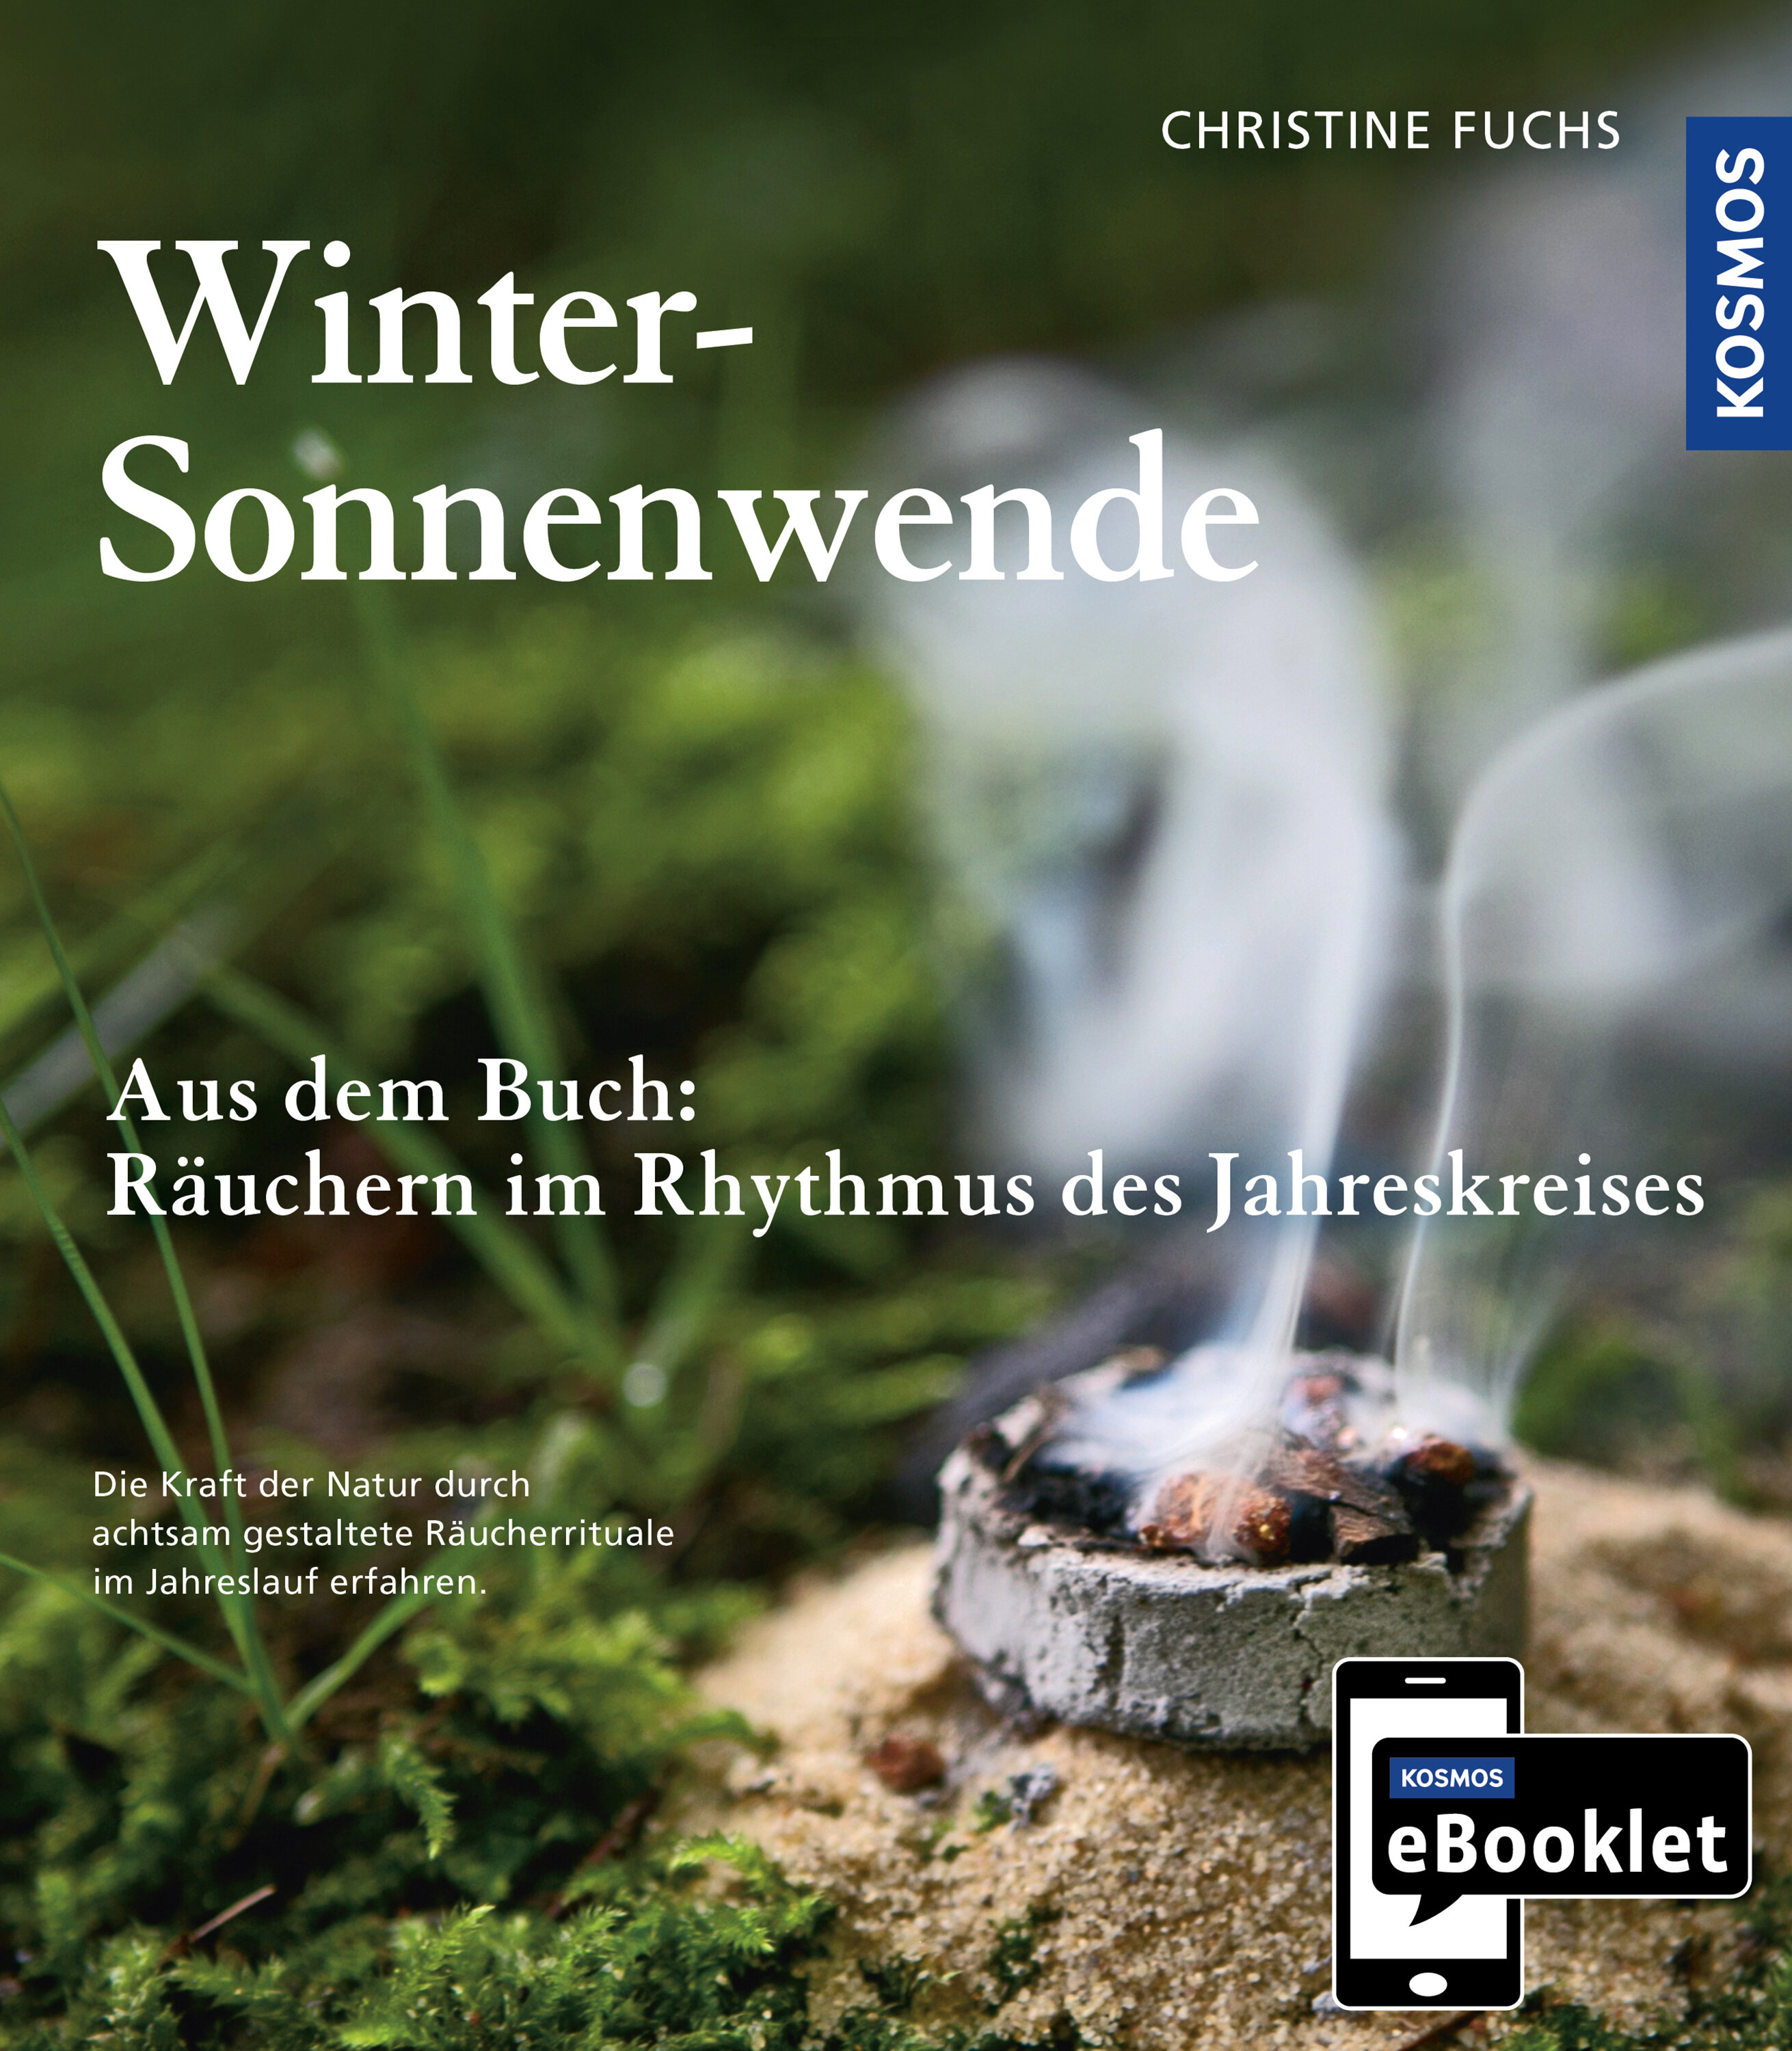 KOSMOS eBooklet: Winter-Sonnenwende